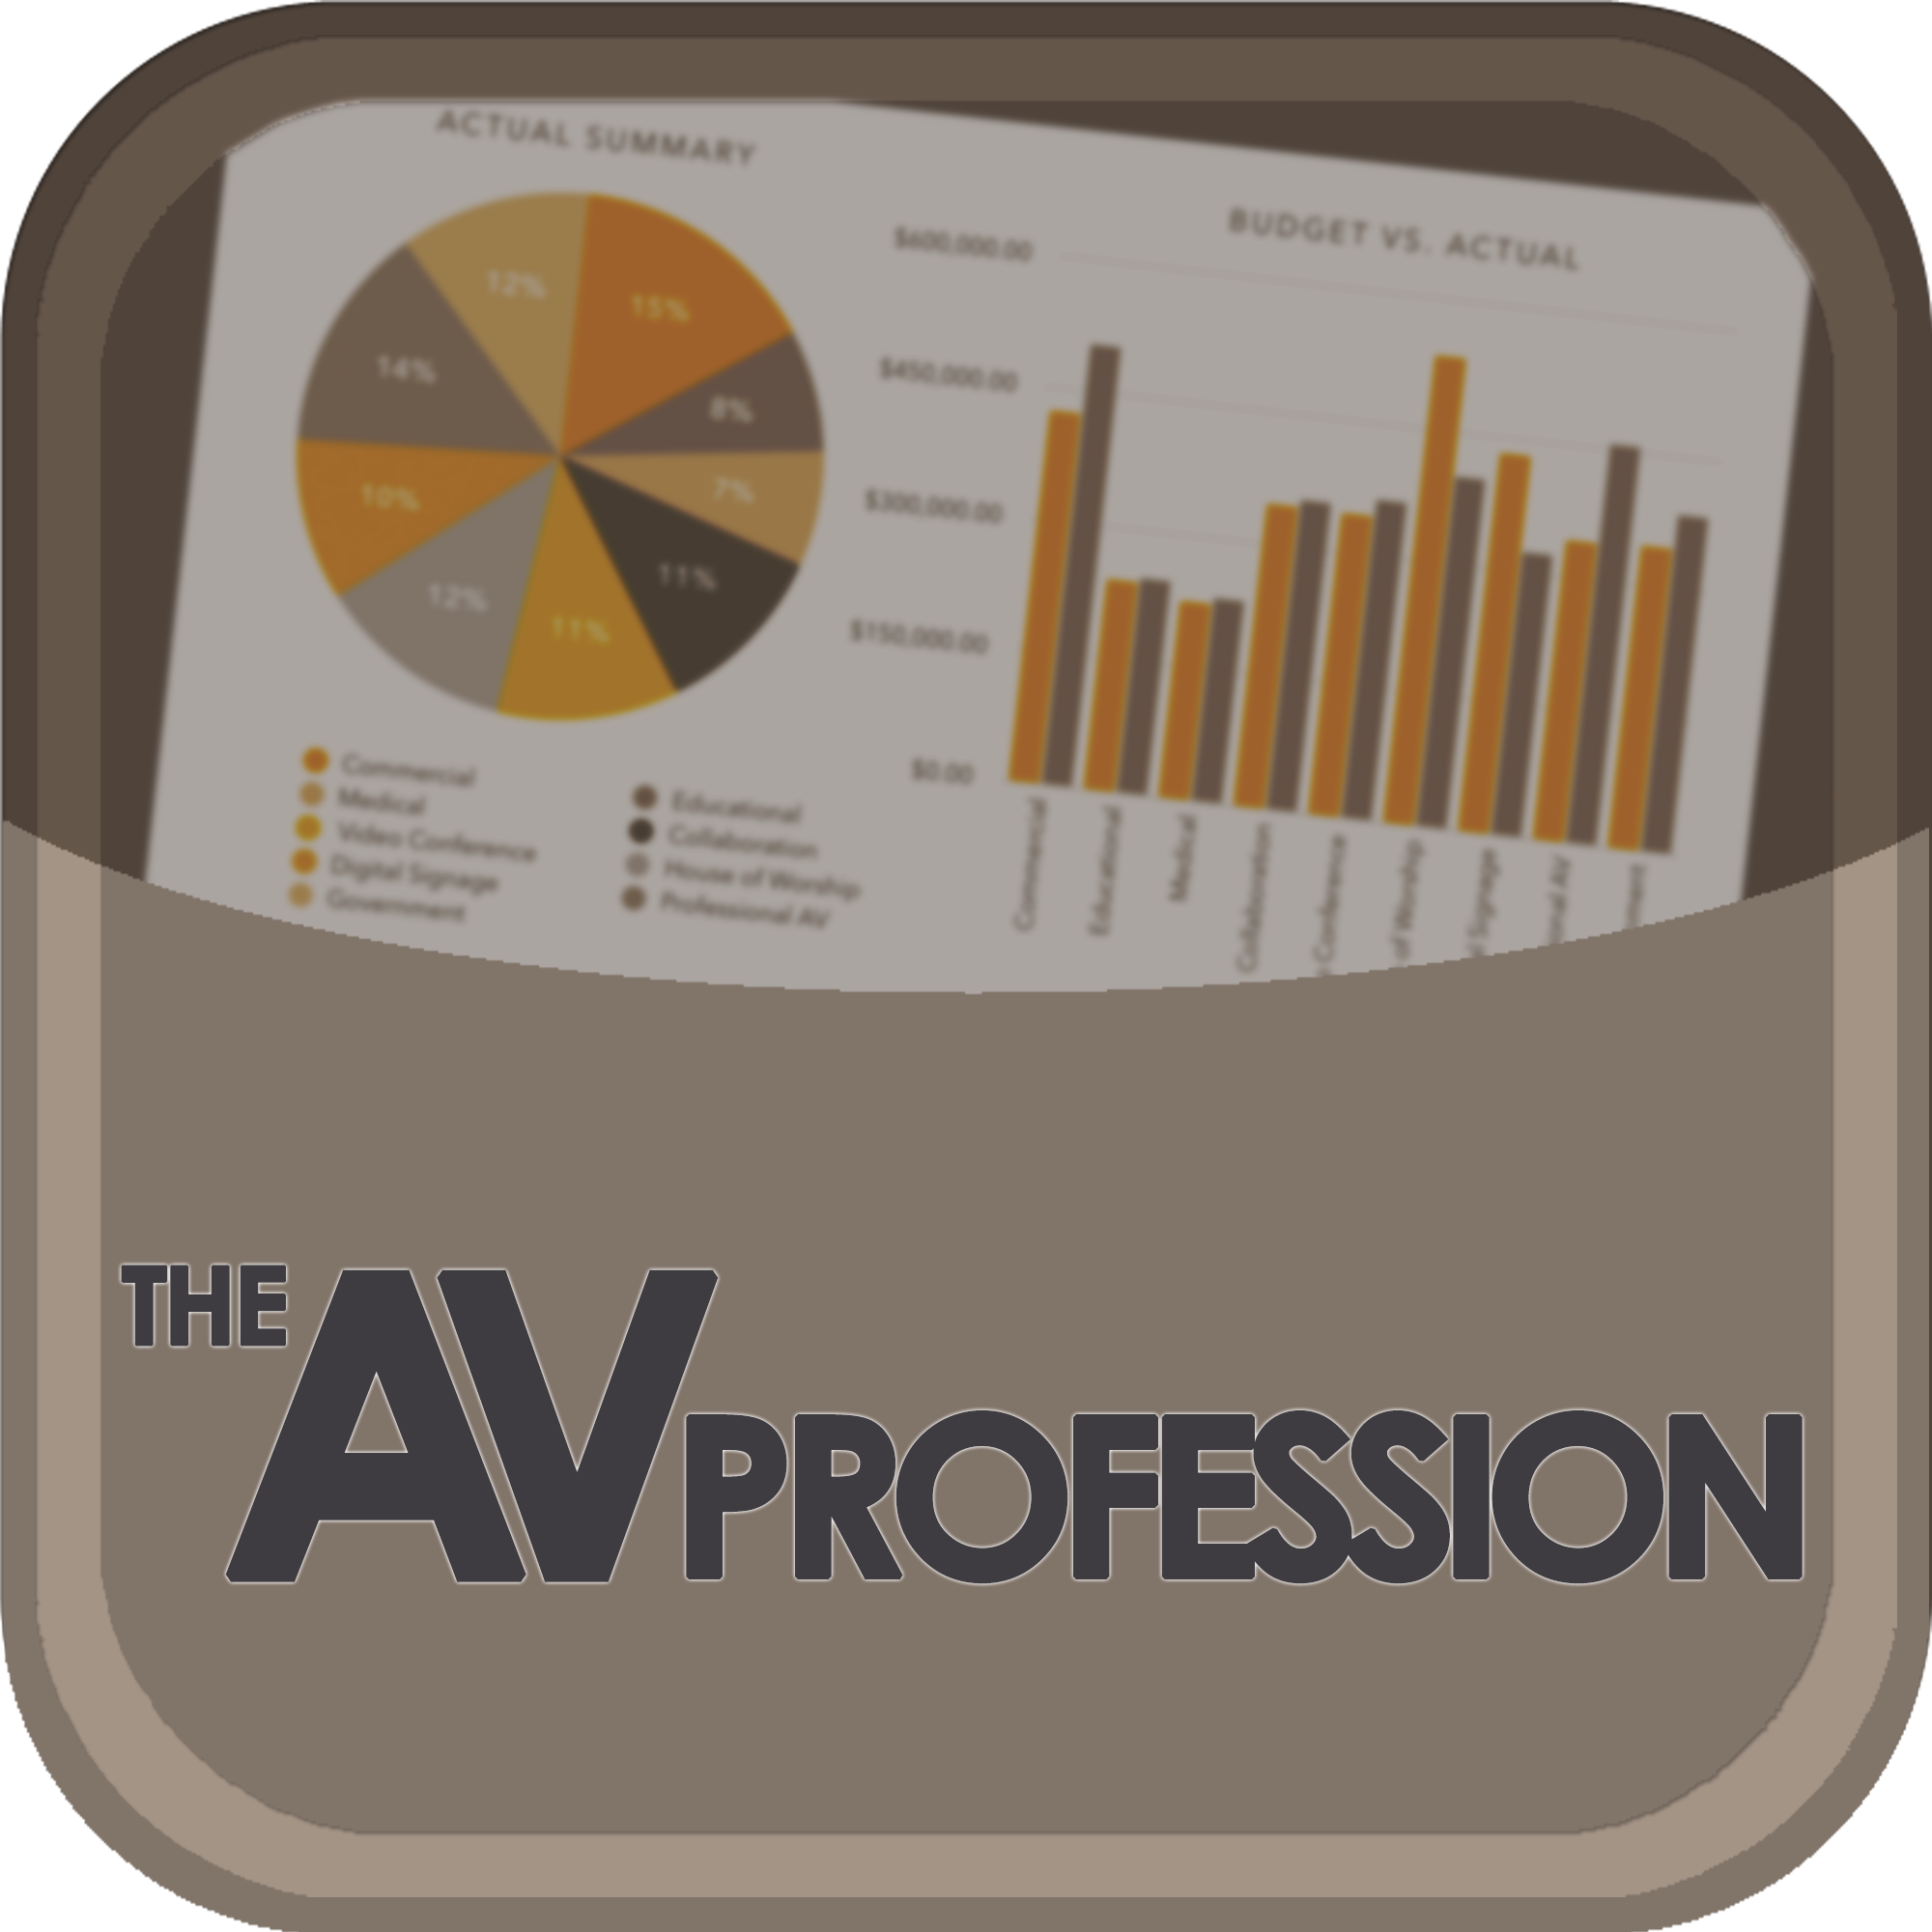 The AV Profession podcast